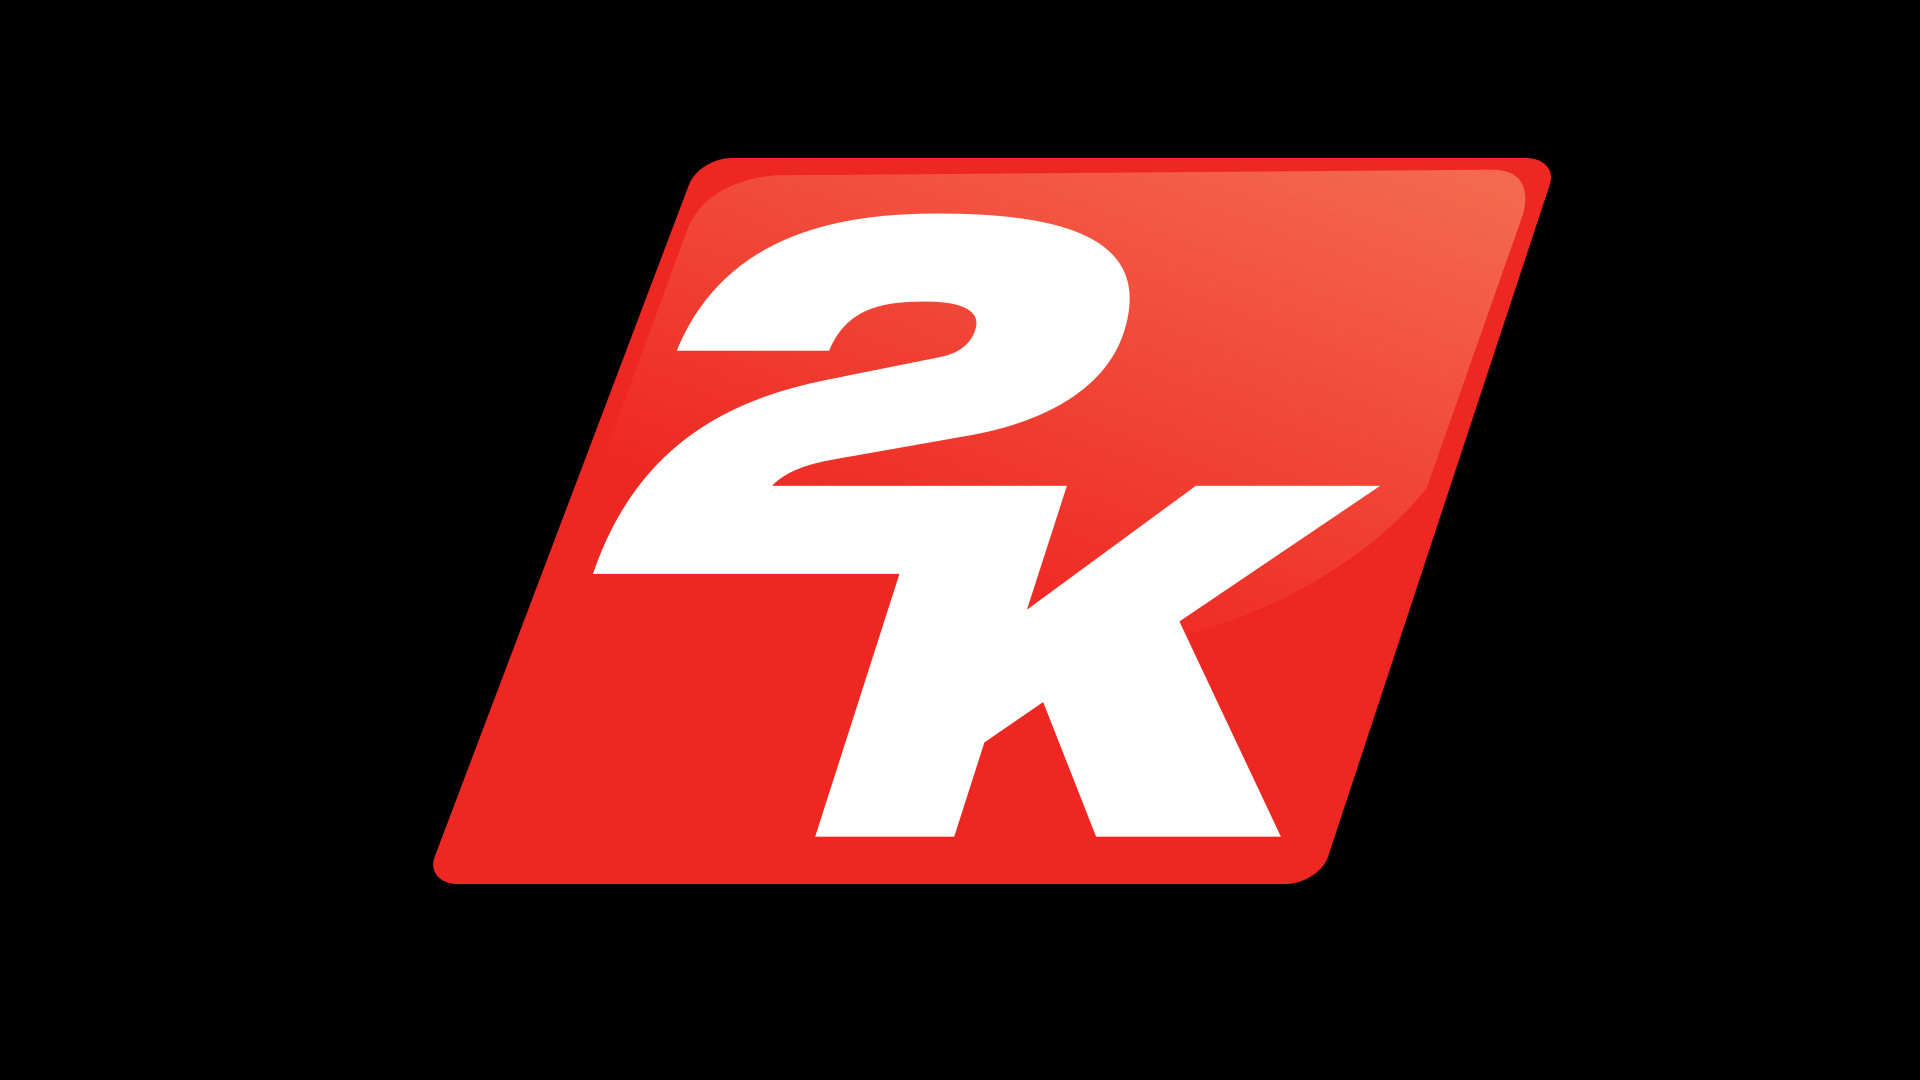 Www game 2 com. 2k games. 2k логотип. Логотипы игр. Game логотип 2k.